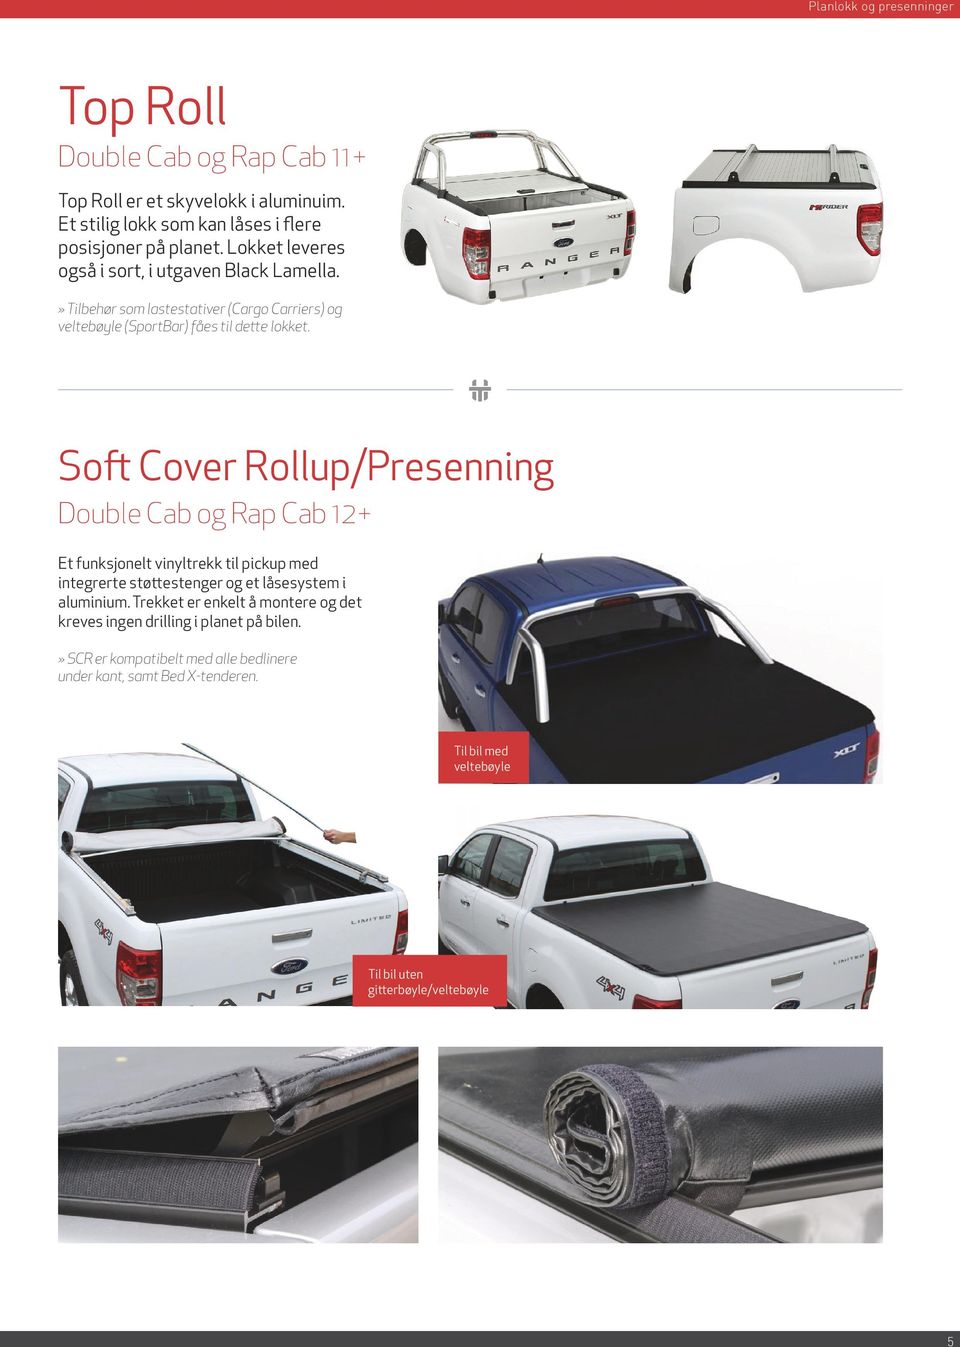 Soft Cover Rollup/Presenning Double Cab og Rap Cab 12+ Et funksjonelt vinyltrekk til pickup med integrerte støttestenger og et låsesystem i aluminium.